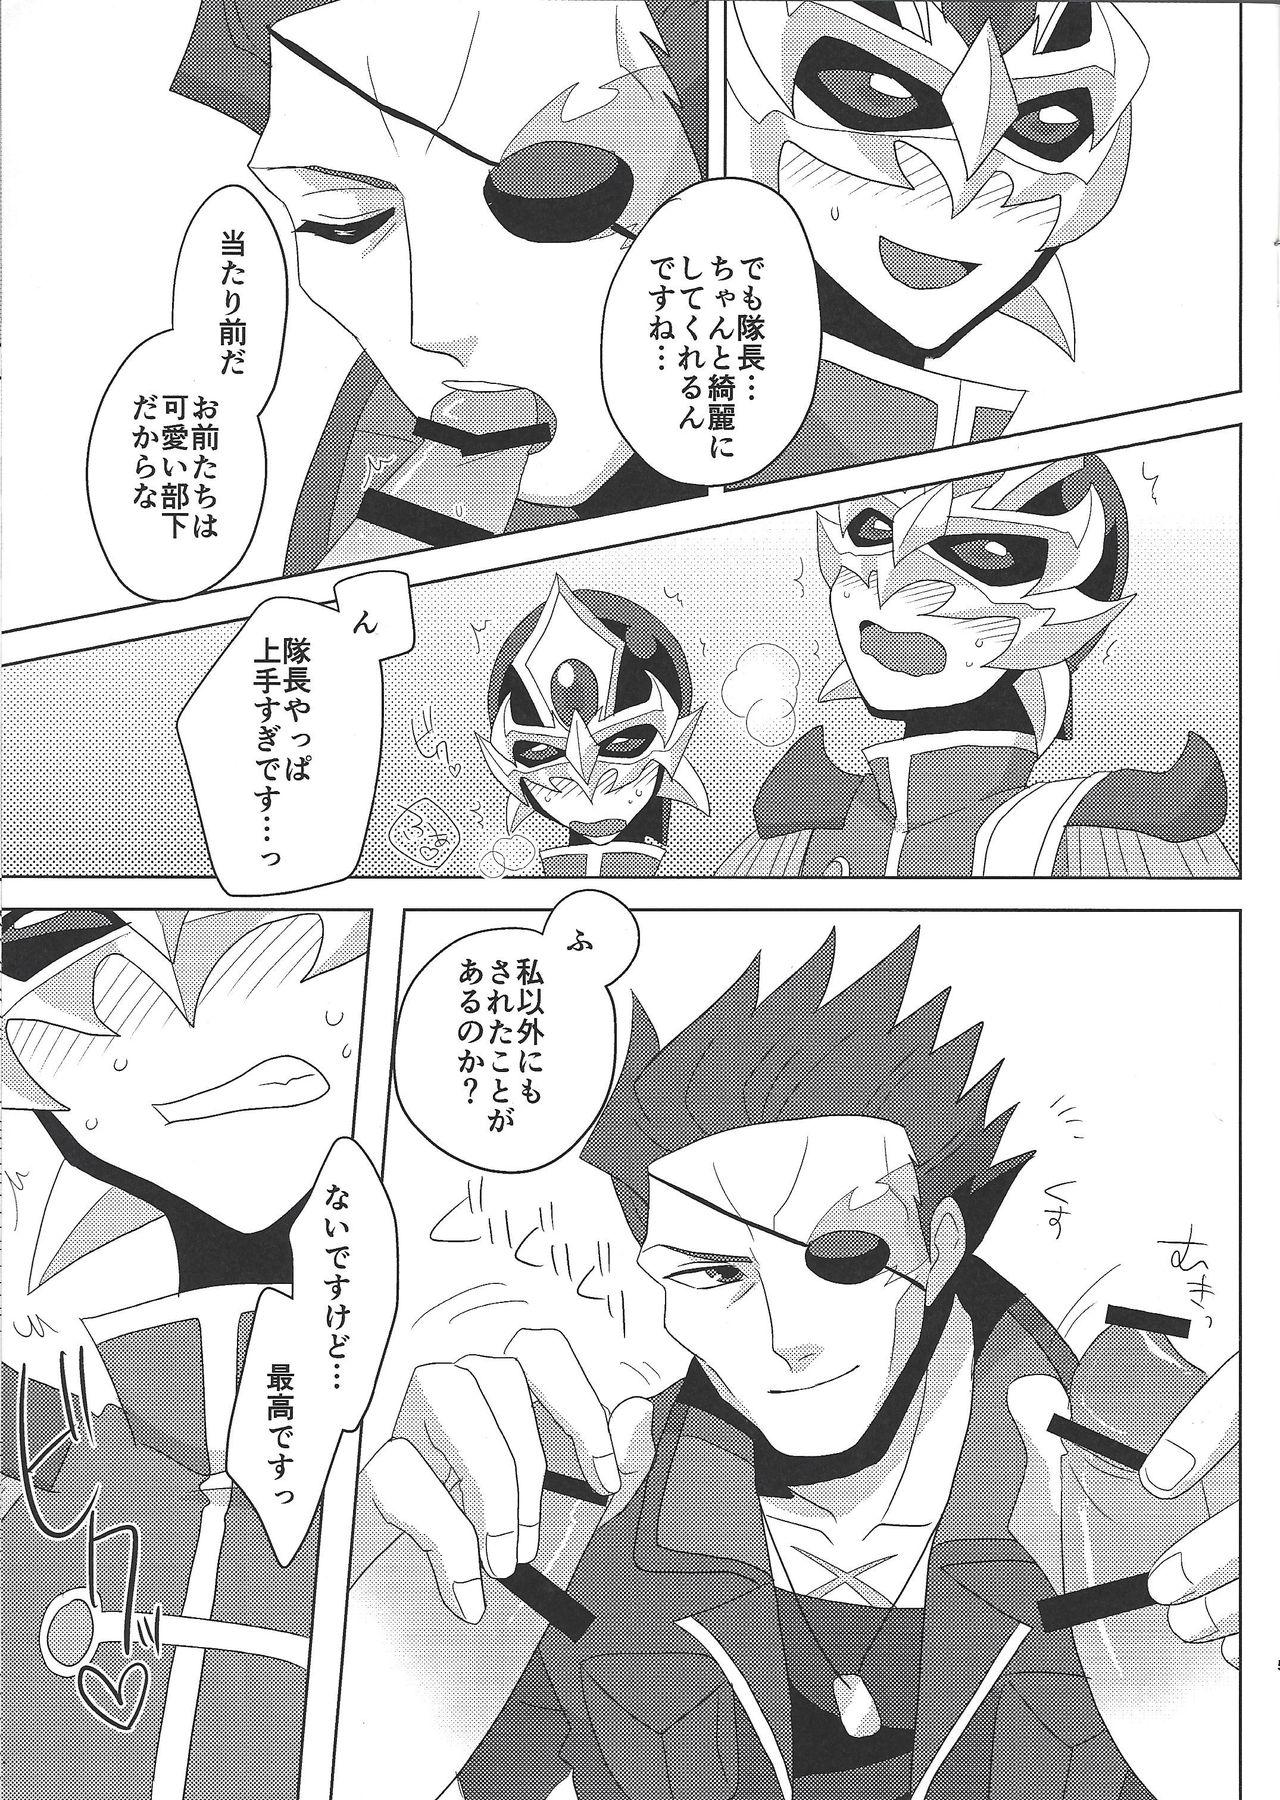 Tall Taichō! Kon'ya mo onegai shimasu! - Yu-gi-oh arc-v Ginger - Page 4